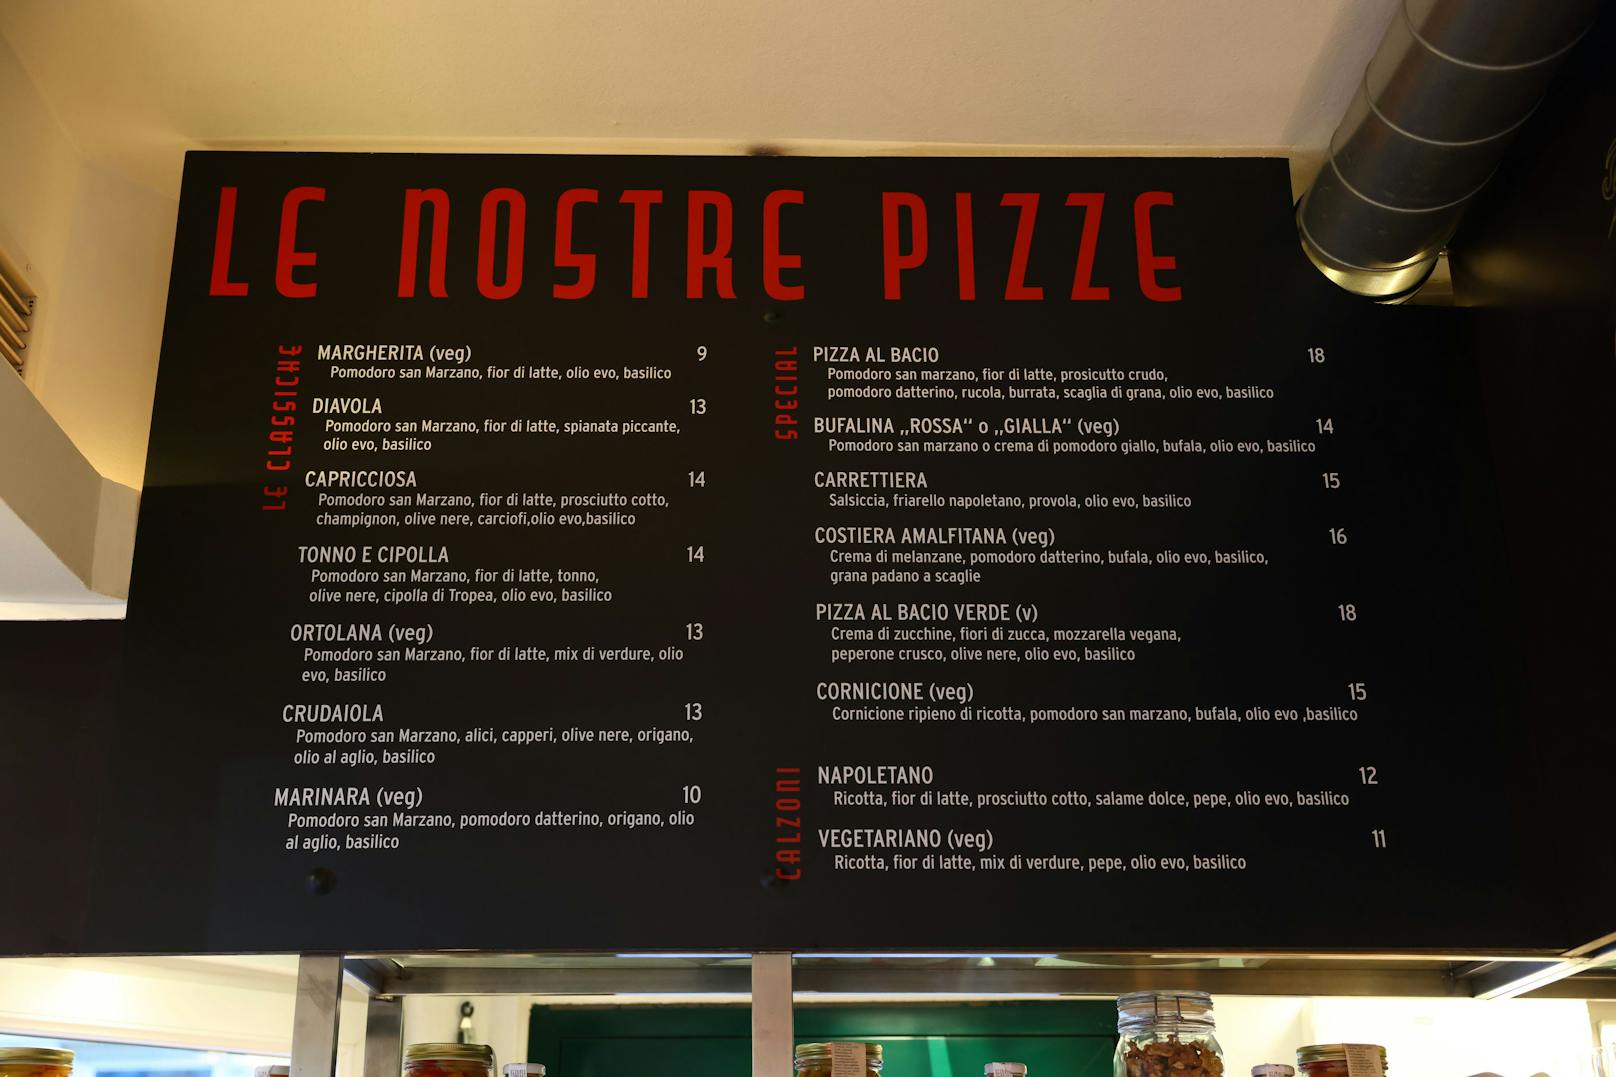 Die Preise der Pizzen bewegen sich zwischen 9 und 18 Euro